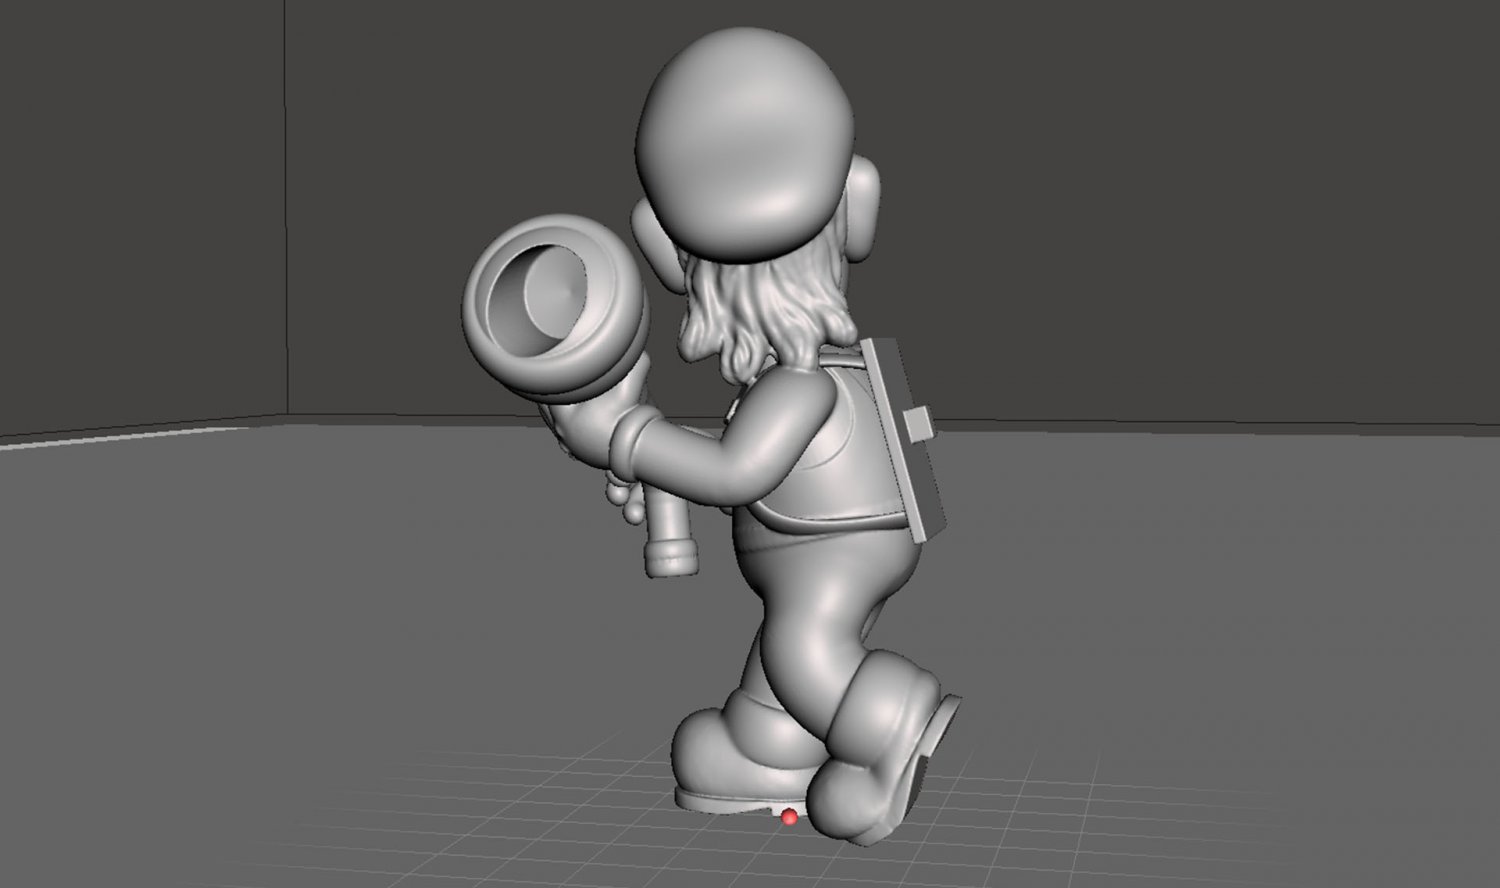 Luigis Mansion 3 Fan Art 3D Model in Other 3DExport.